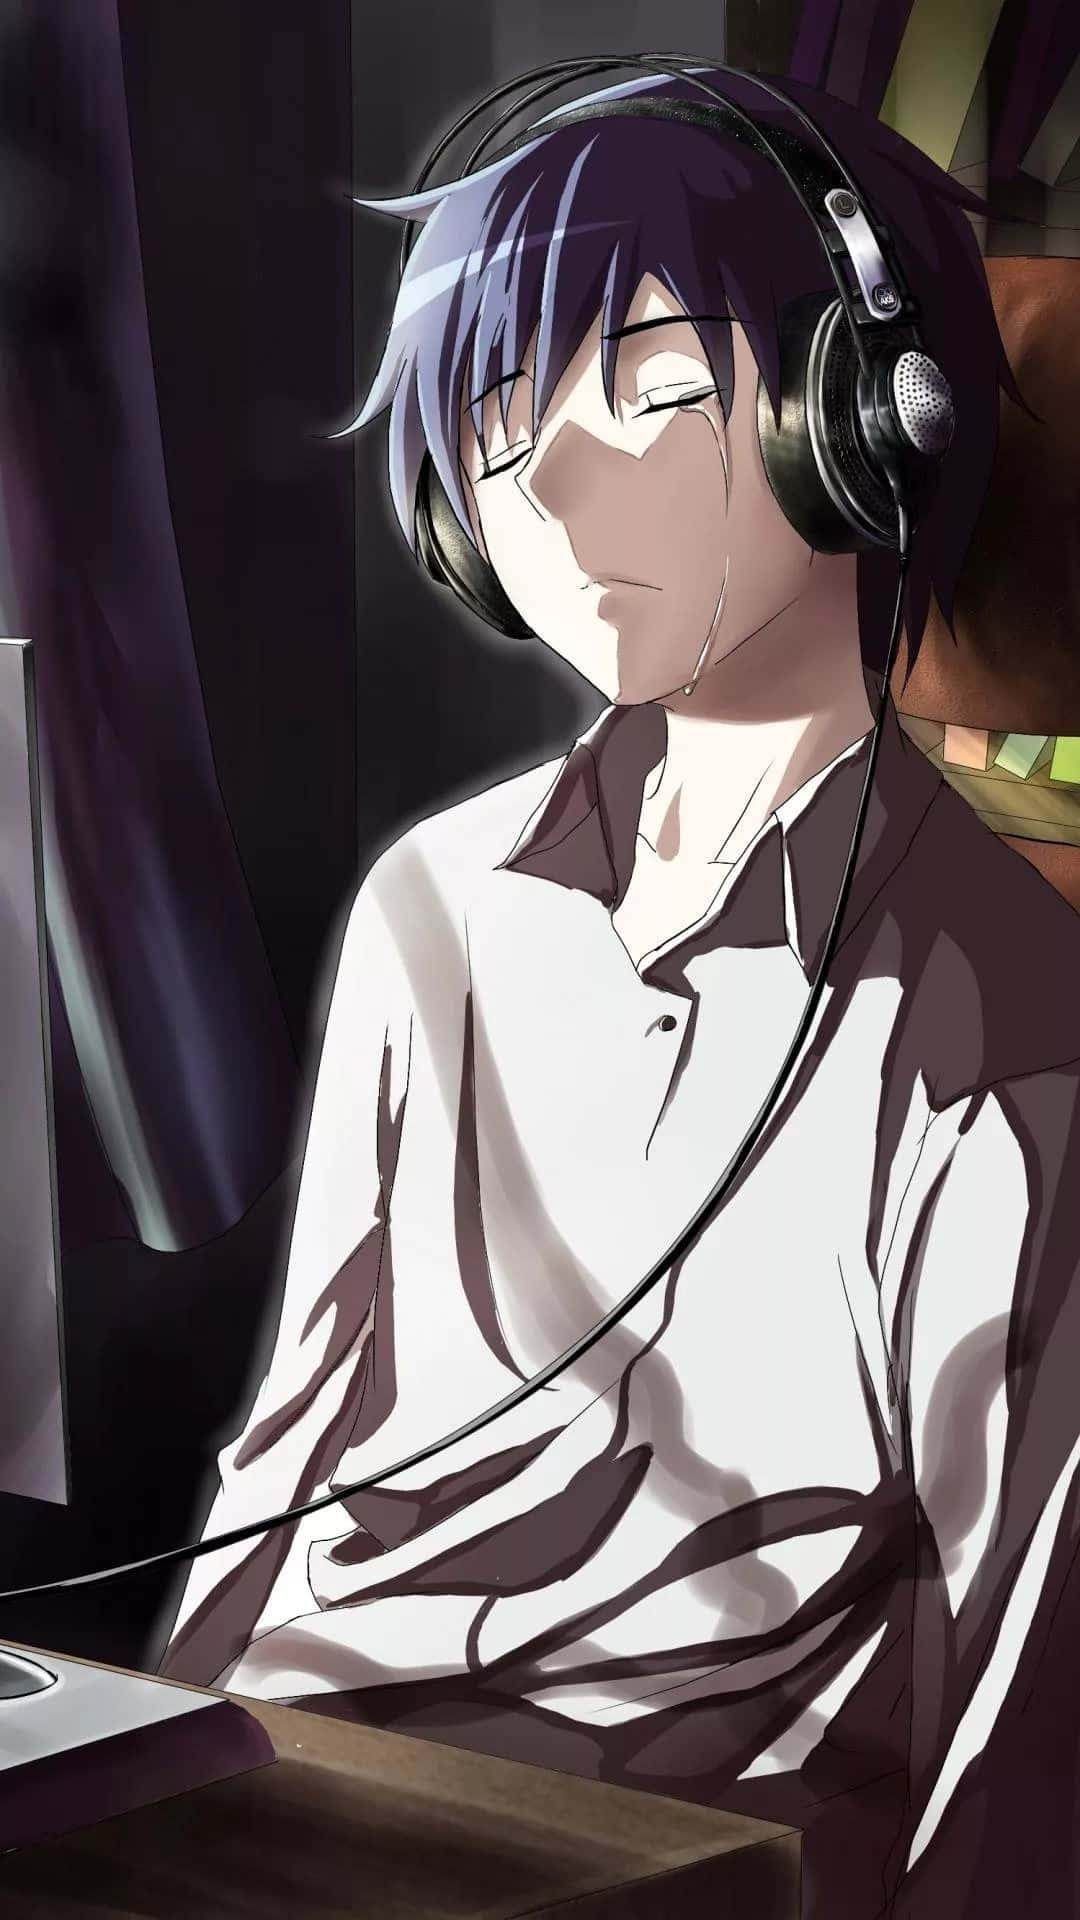 Sad Depressing Anime Haruka Nanase Crying Headphones Background